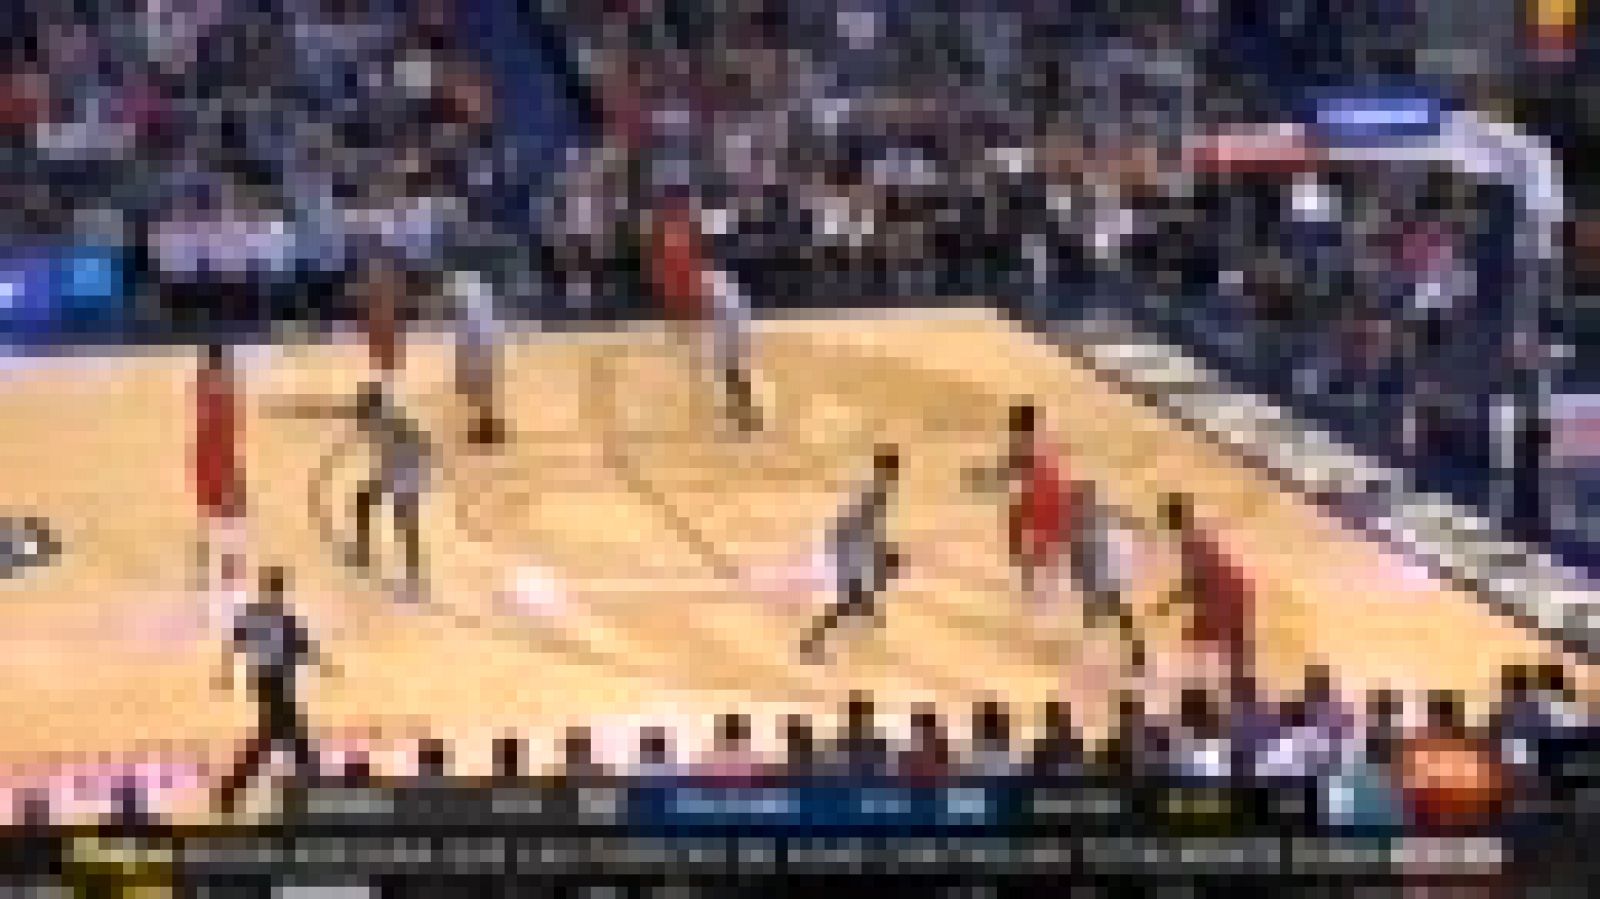 El buen partido de Mirotic permitió a los Pelicans ganar a los Spurs y evitar el cruce en los playoffs con los Warriors, que jugarán contra San Antonio.